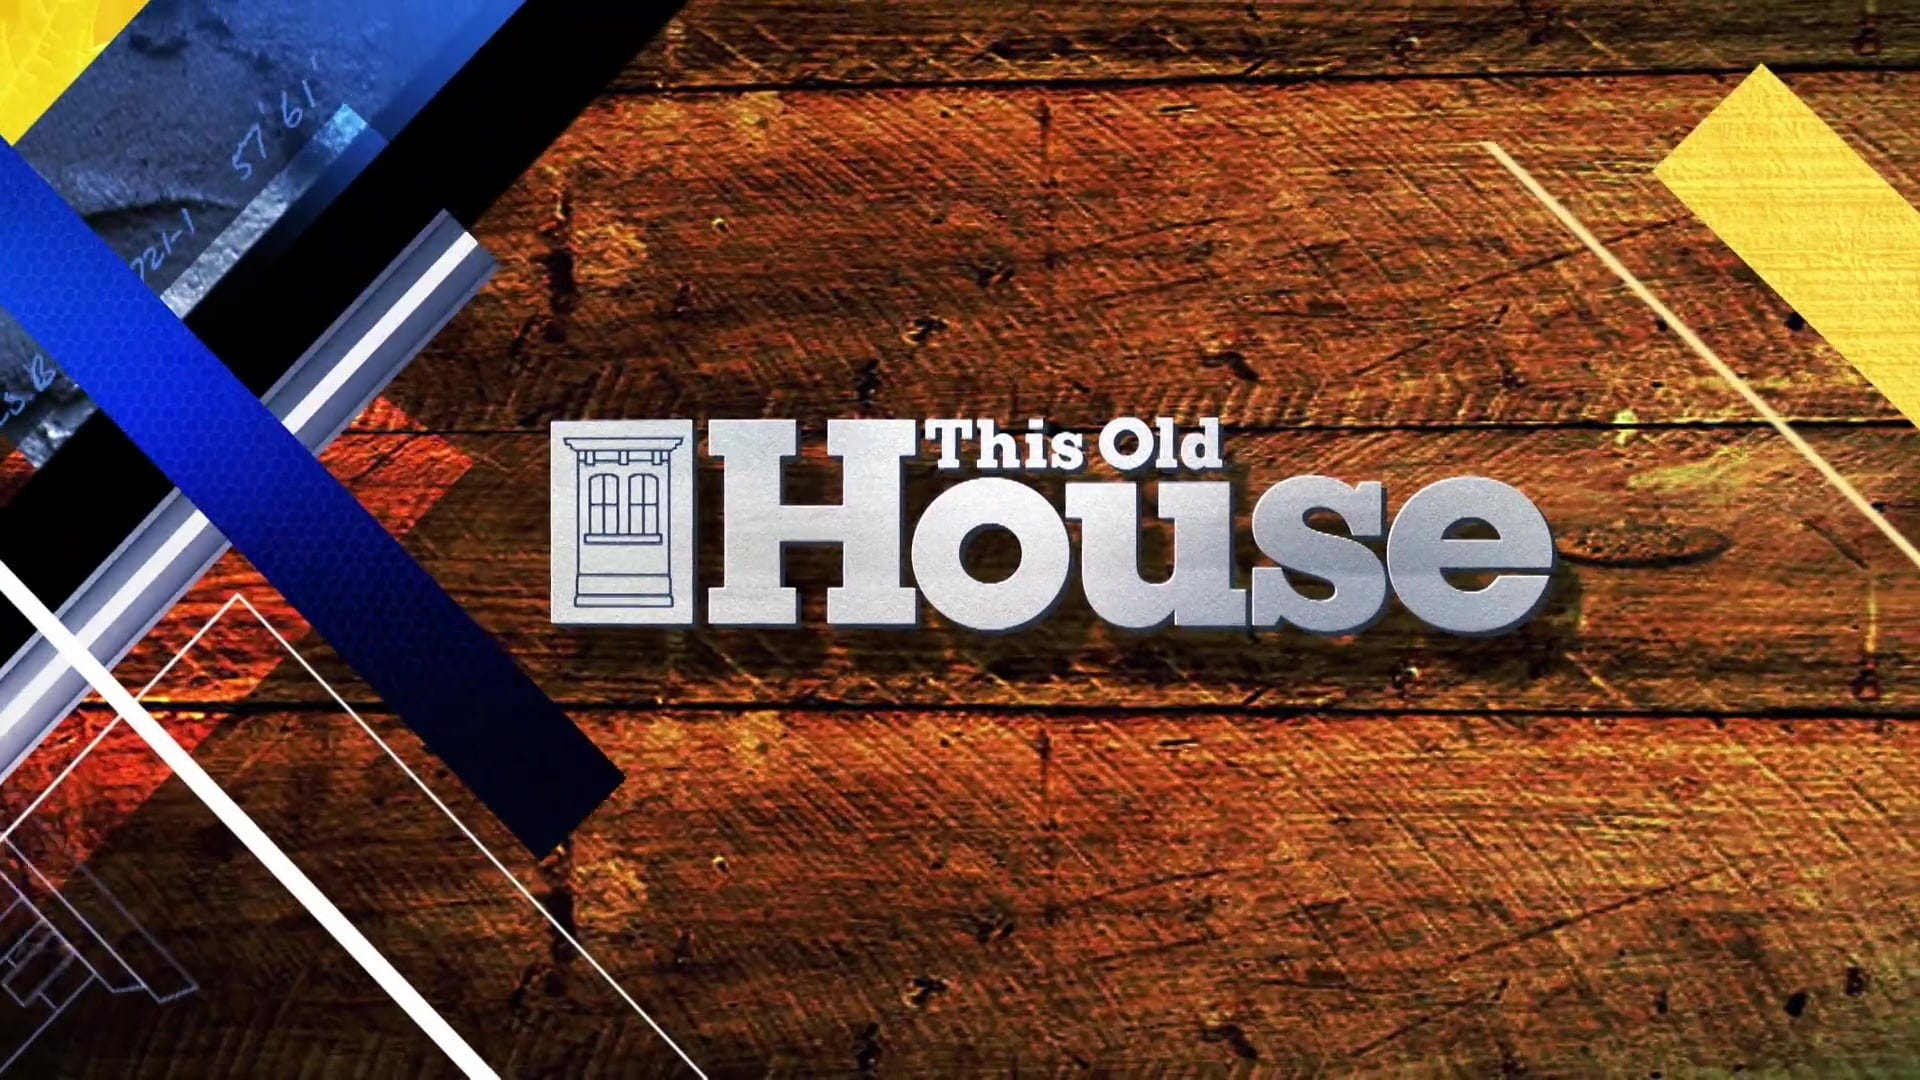 This Old House 42x01 Episode 1 Season 42 Episode 1 Full Episodes